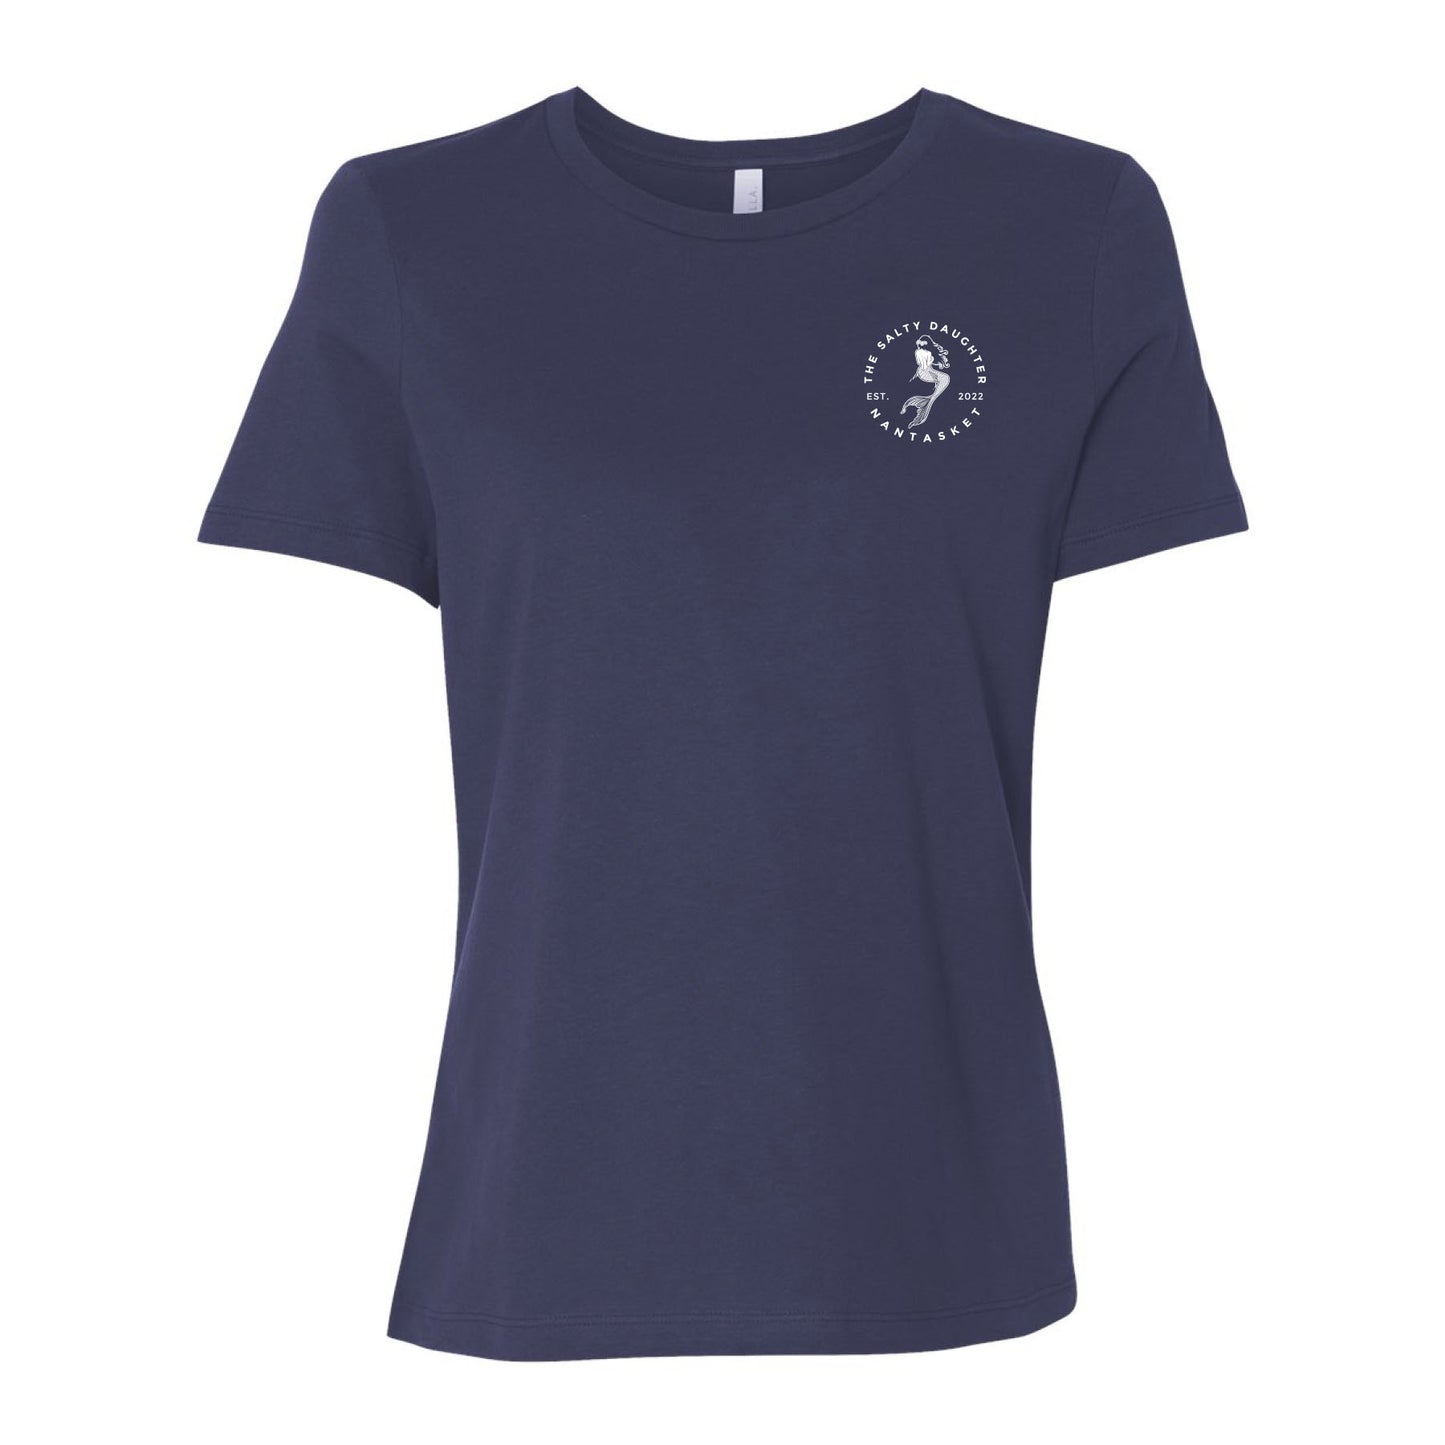 Women's Relaxed Short Sleeve T-Shirt